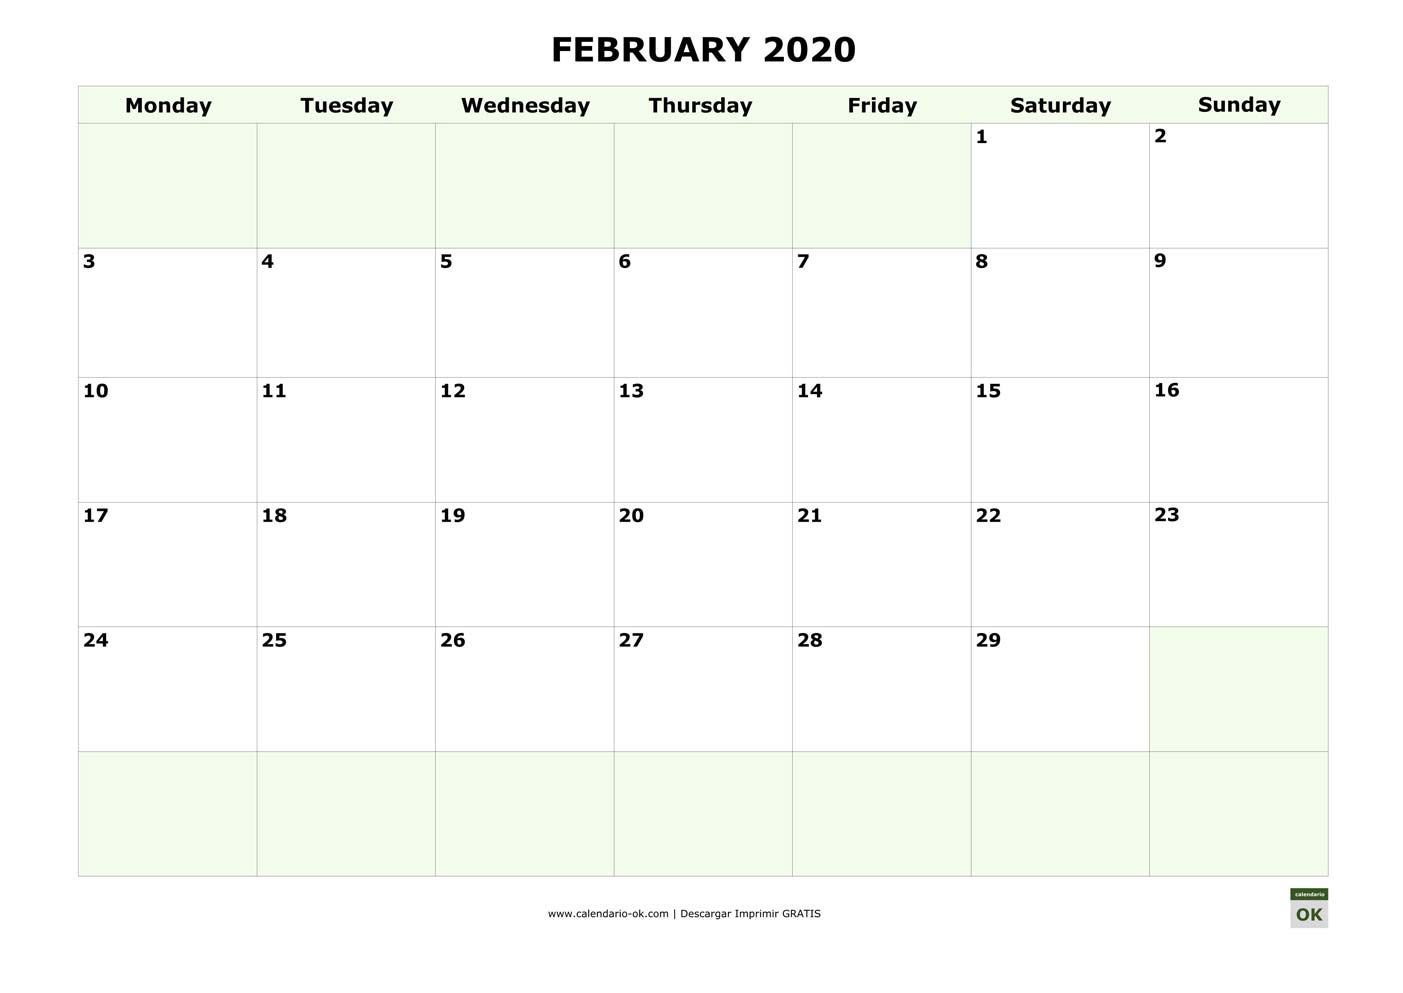 FEBRERO 2020 calendario en INGLES